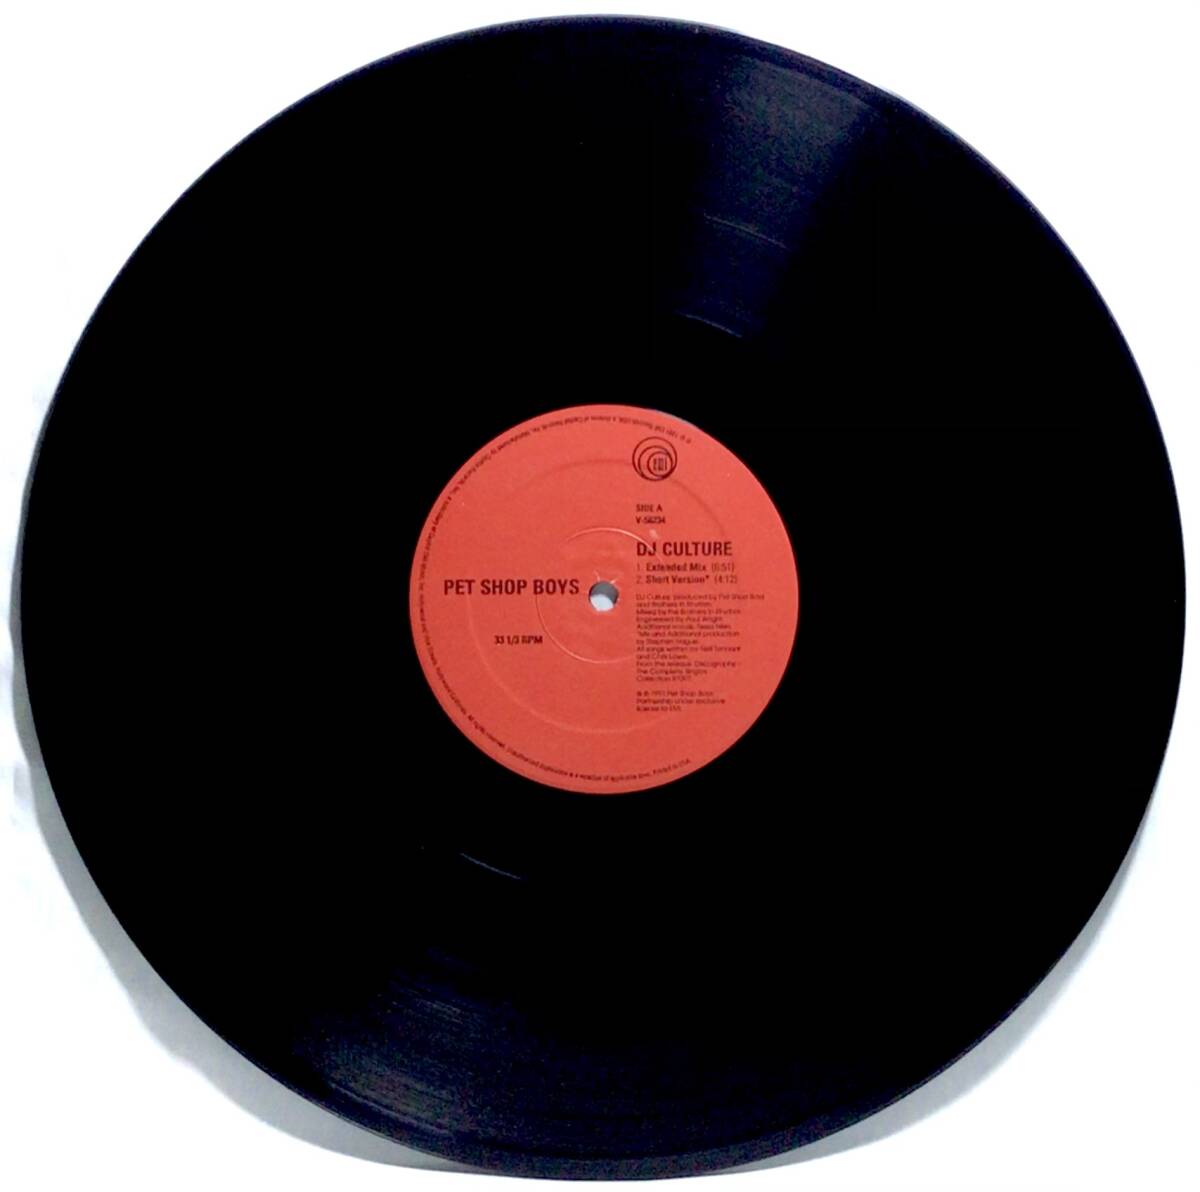 【米12シュリンク】 PET SHOP BOYS ペットショップボーイズ DJ CULTURE / MUSIC FOR BOYS 1991 12インチレコード V-56234 ハイプステッカーの画像4